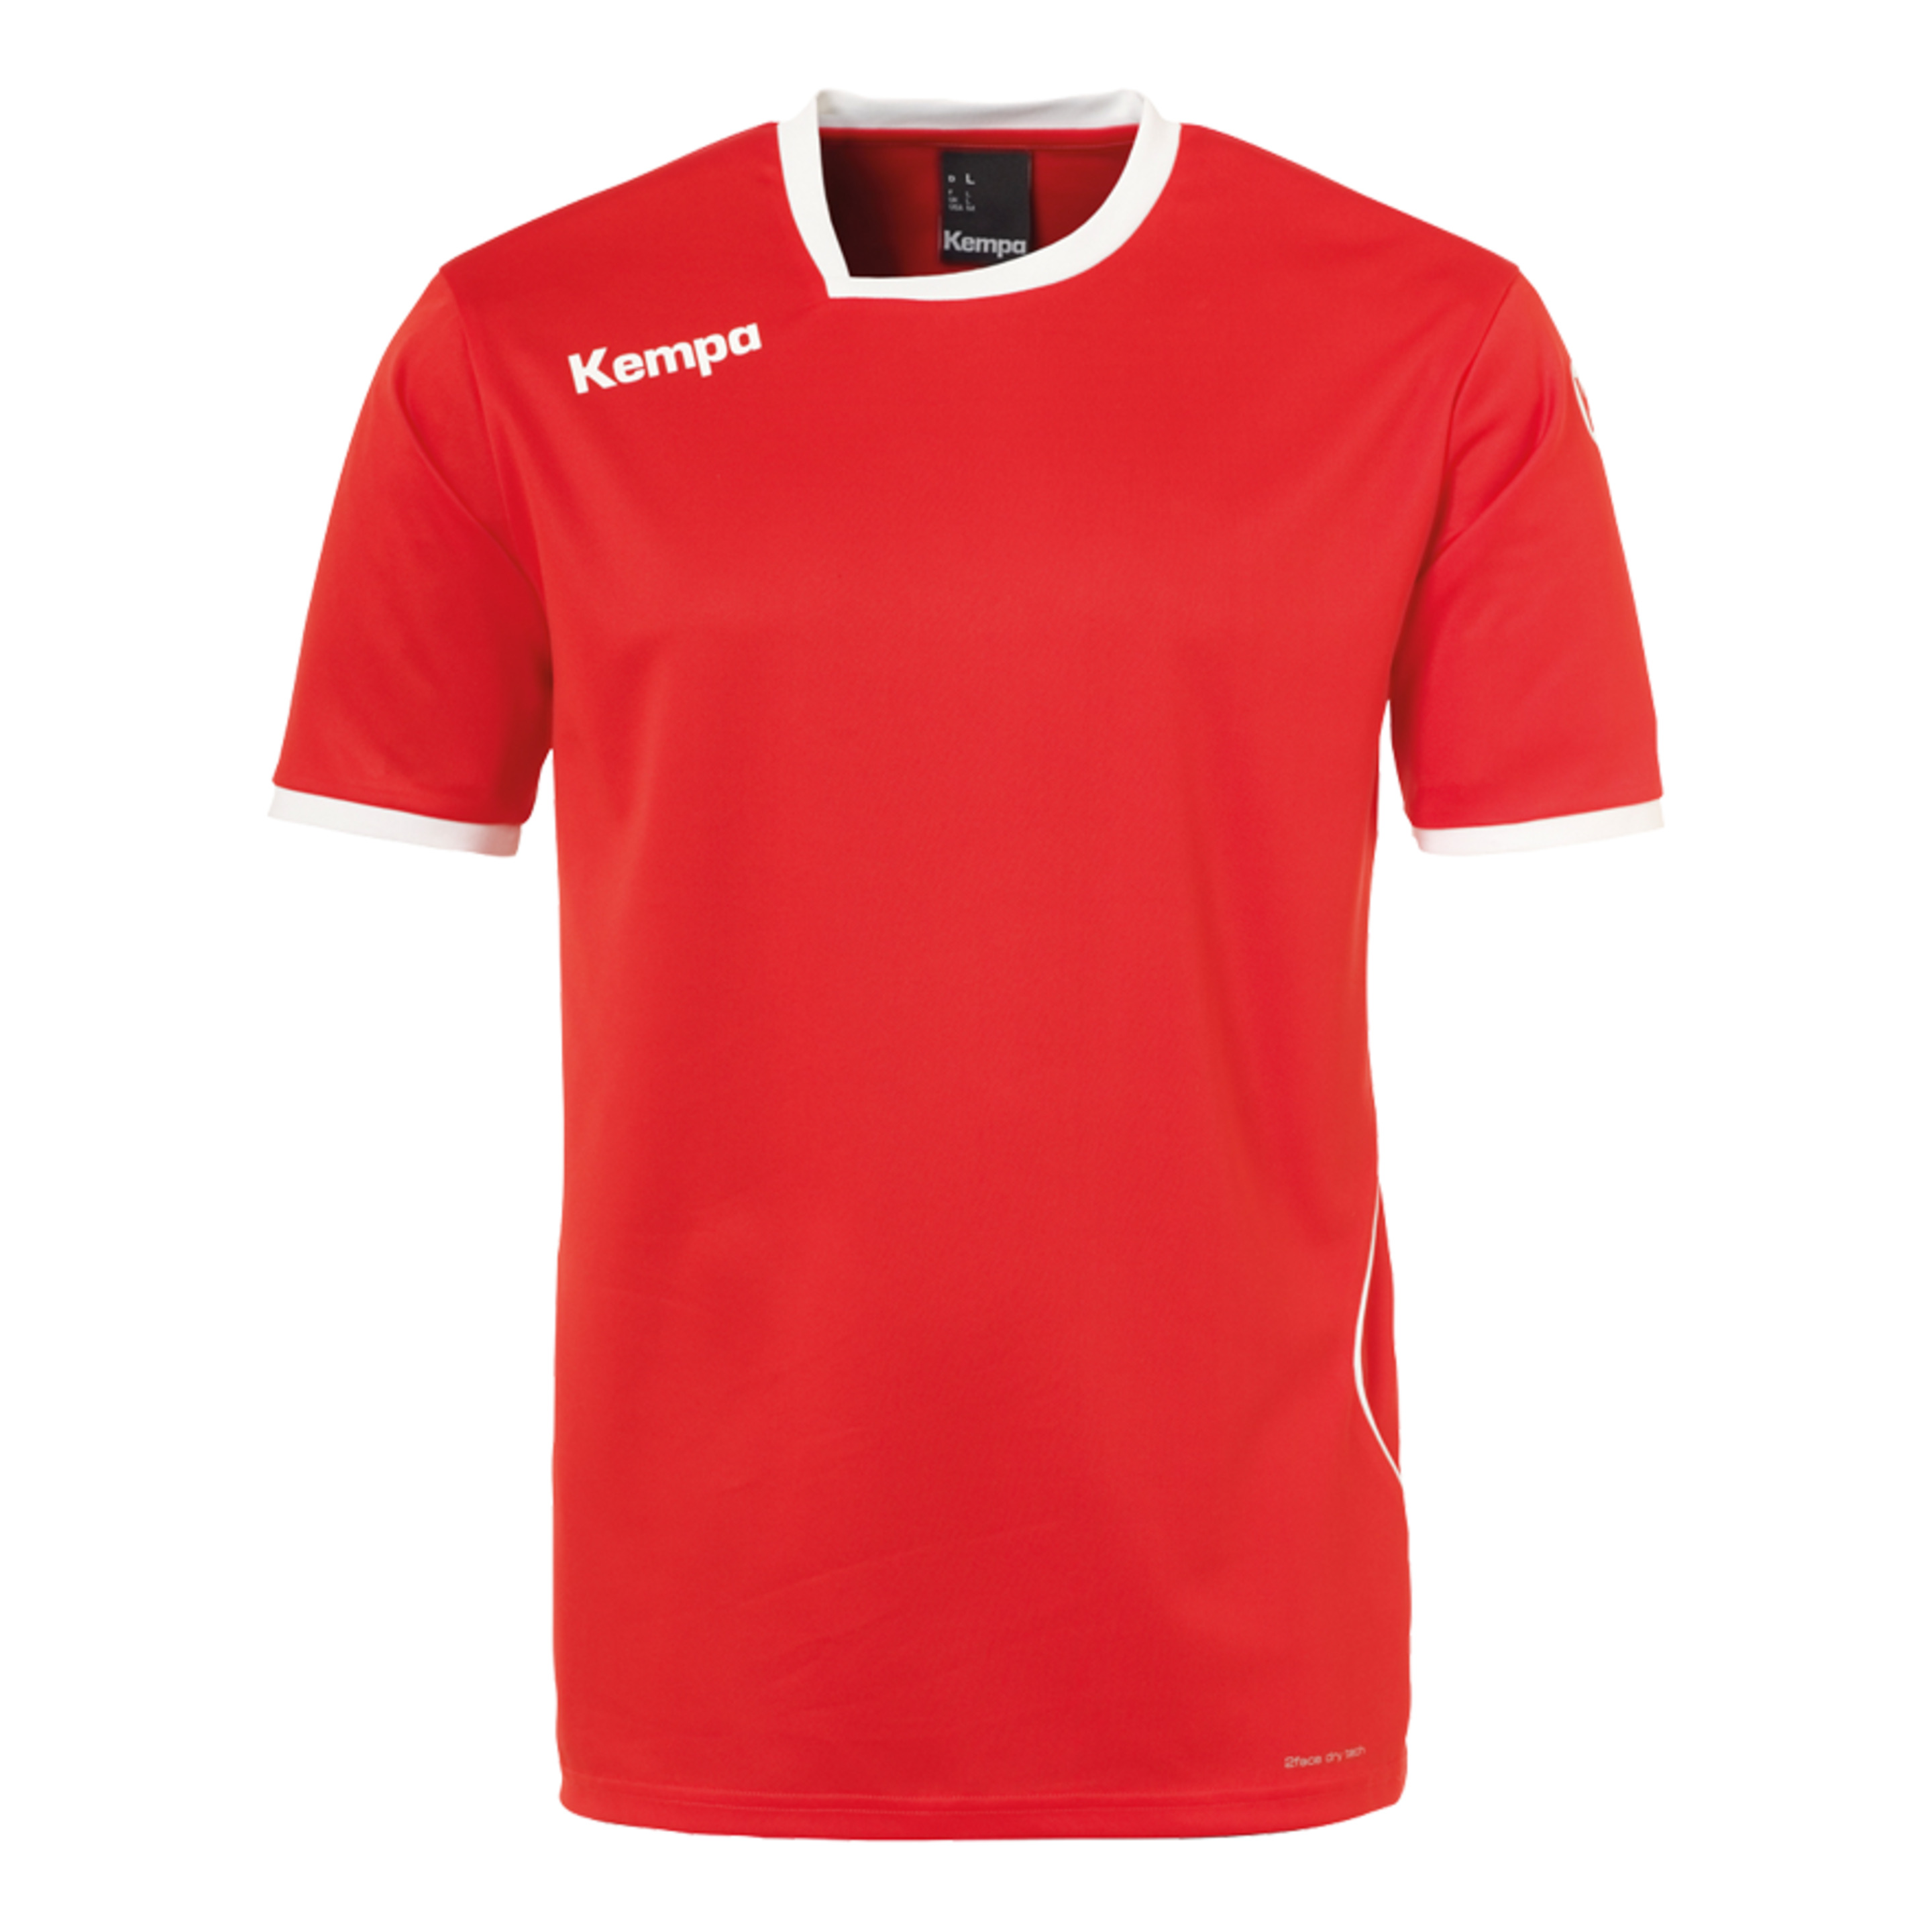 Curve Camiseta Rojo/blanco Kempa - rojo - 